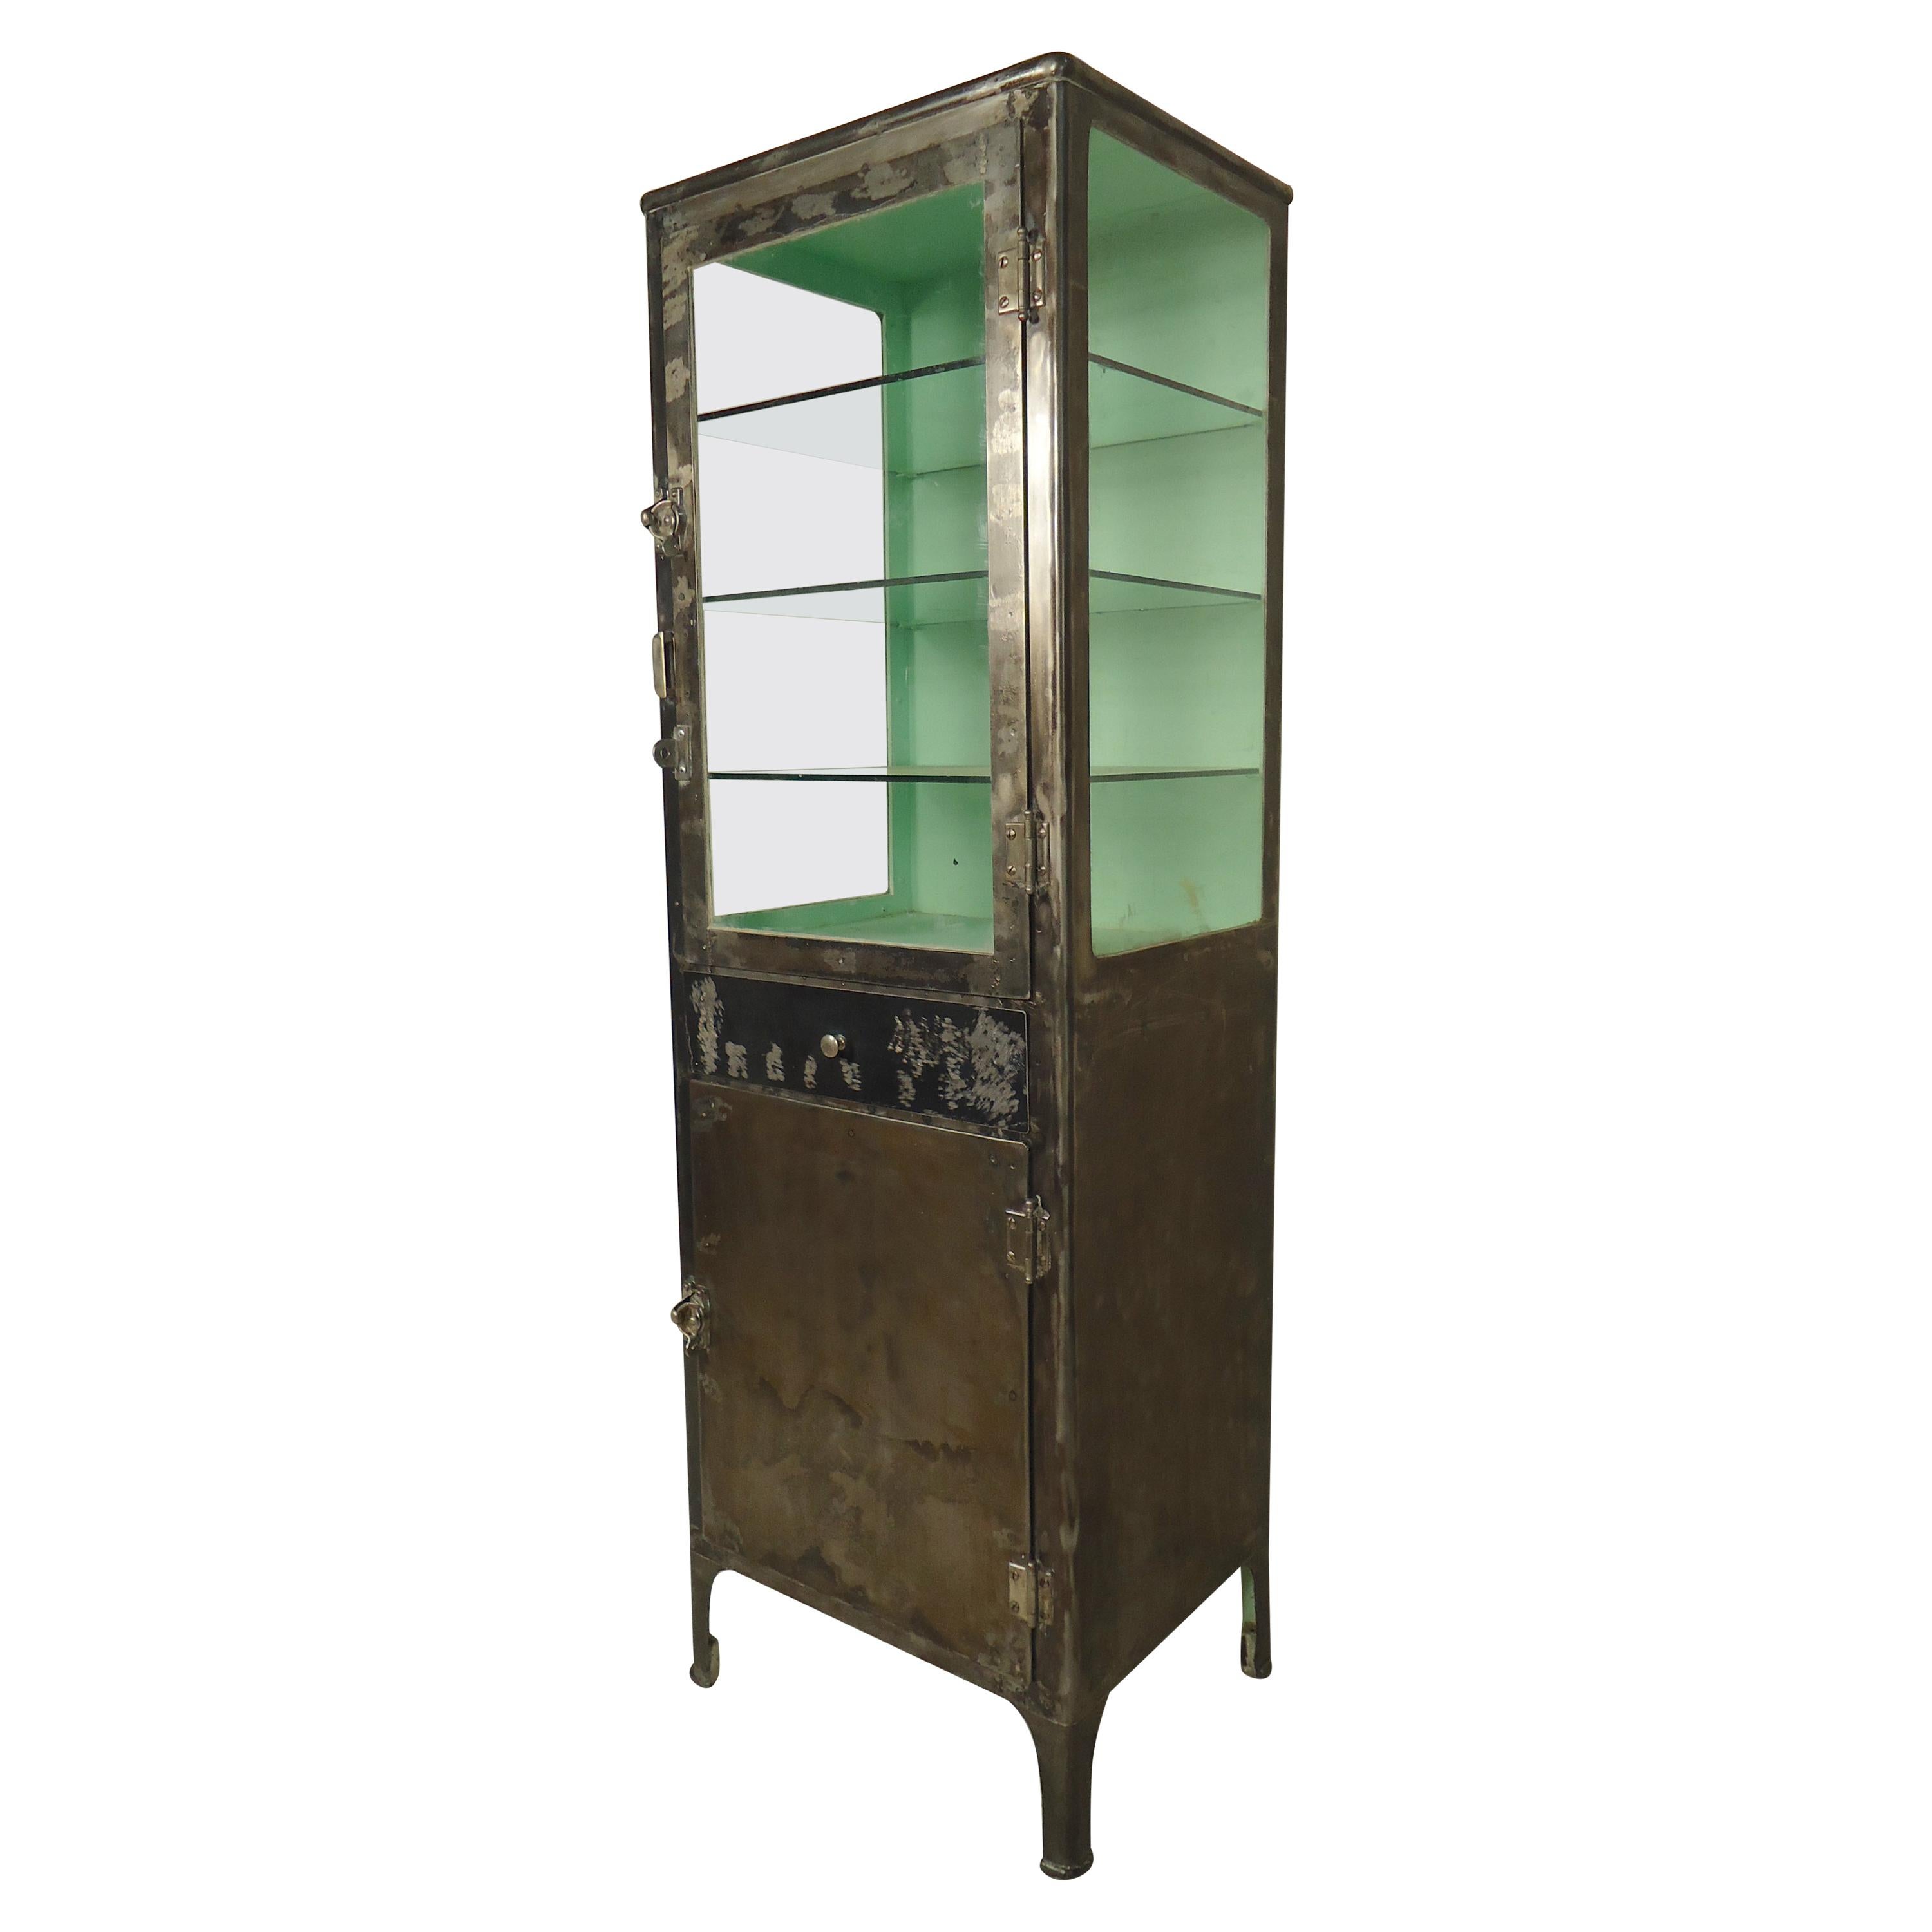 Refinished Vintage Display Cabinet